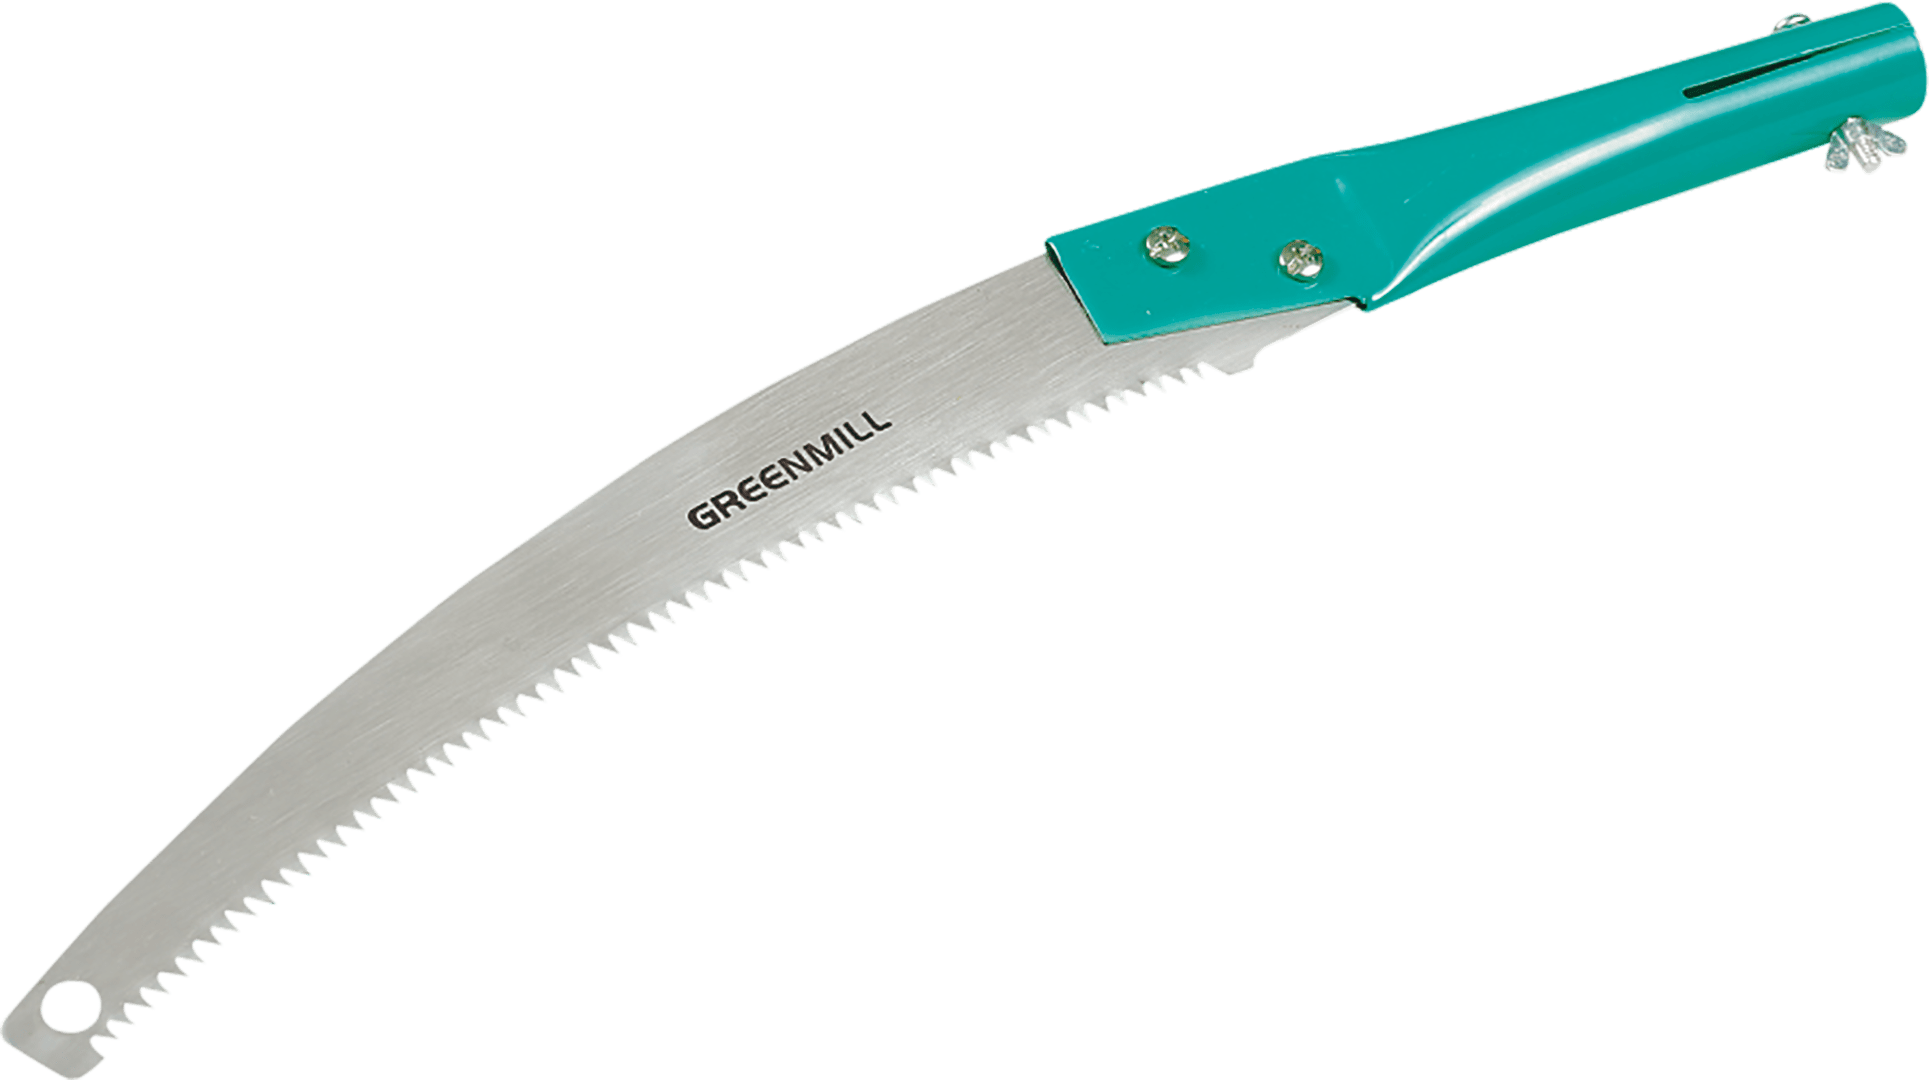 High cut prunning saw type 